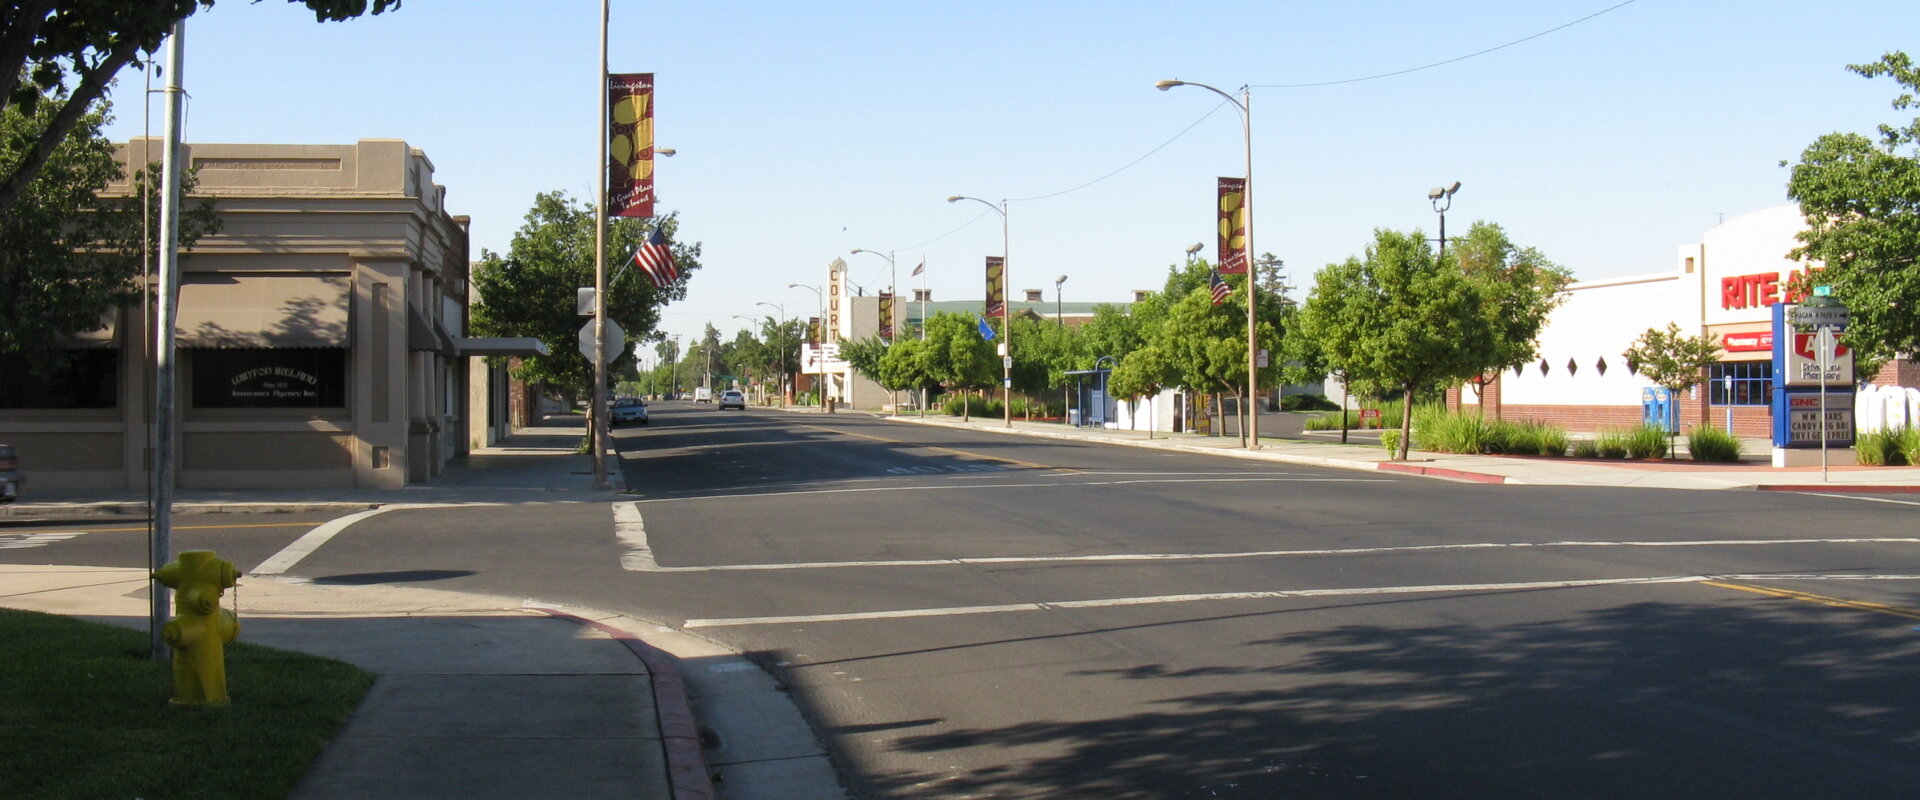 Street in Livingston California